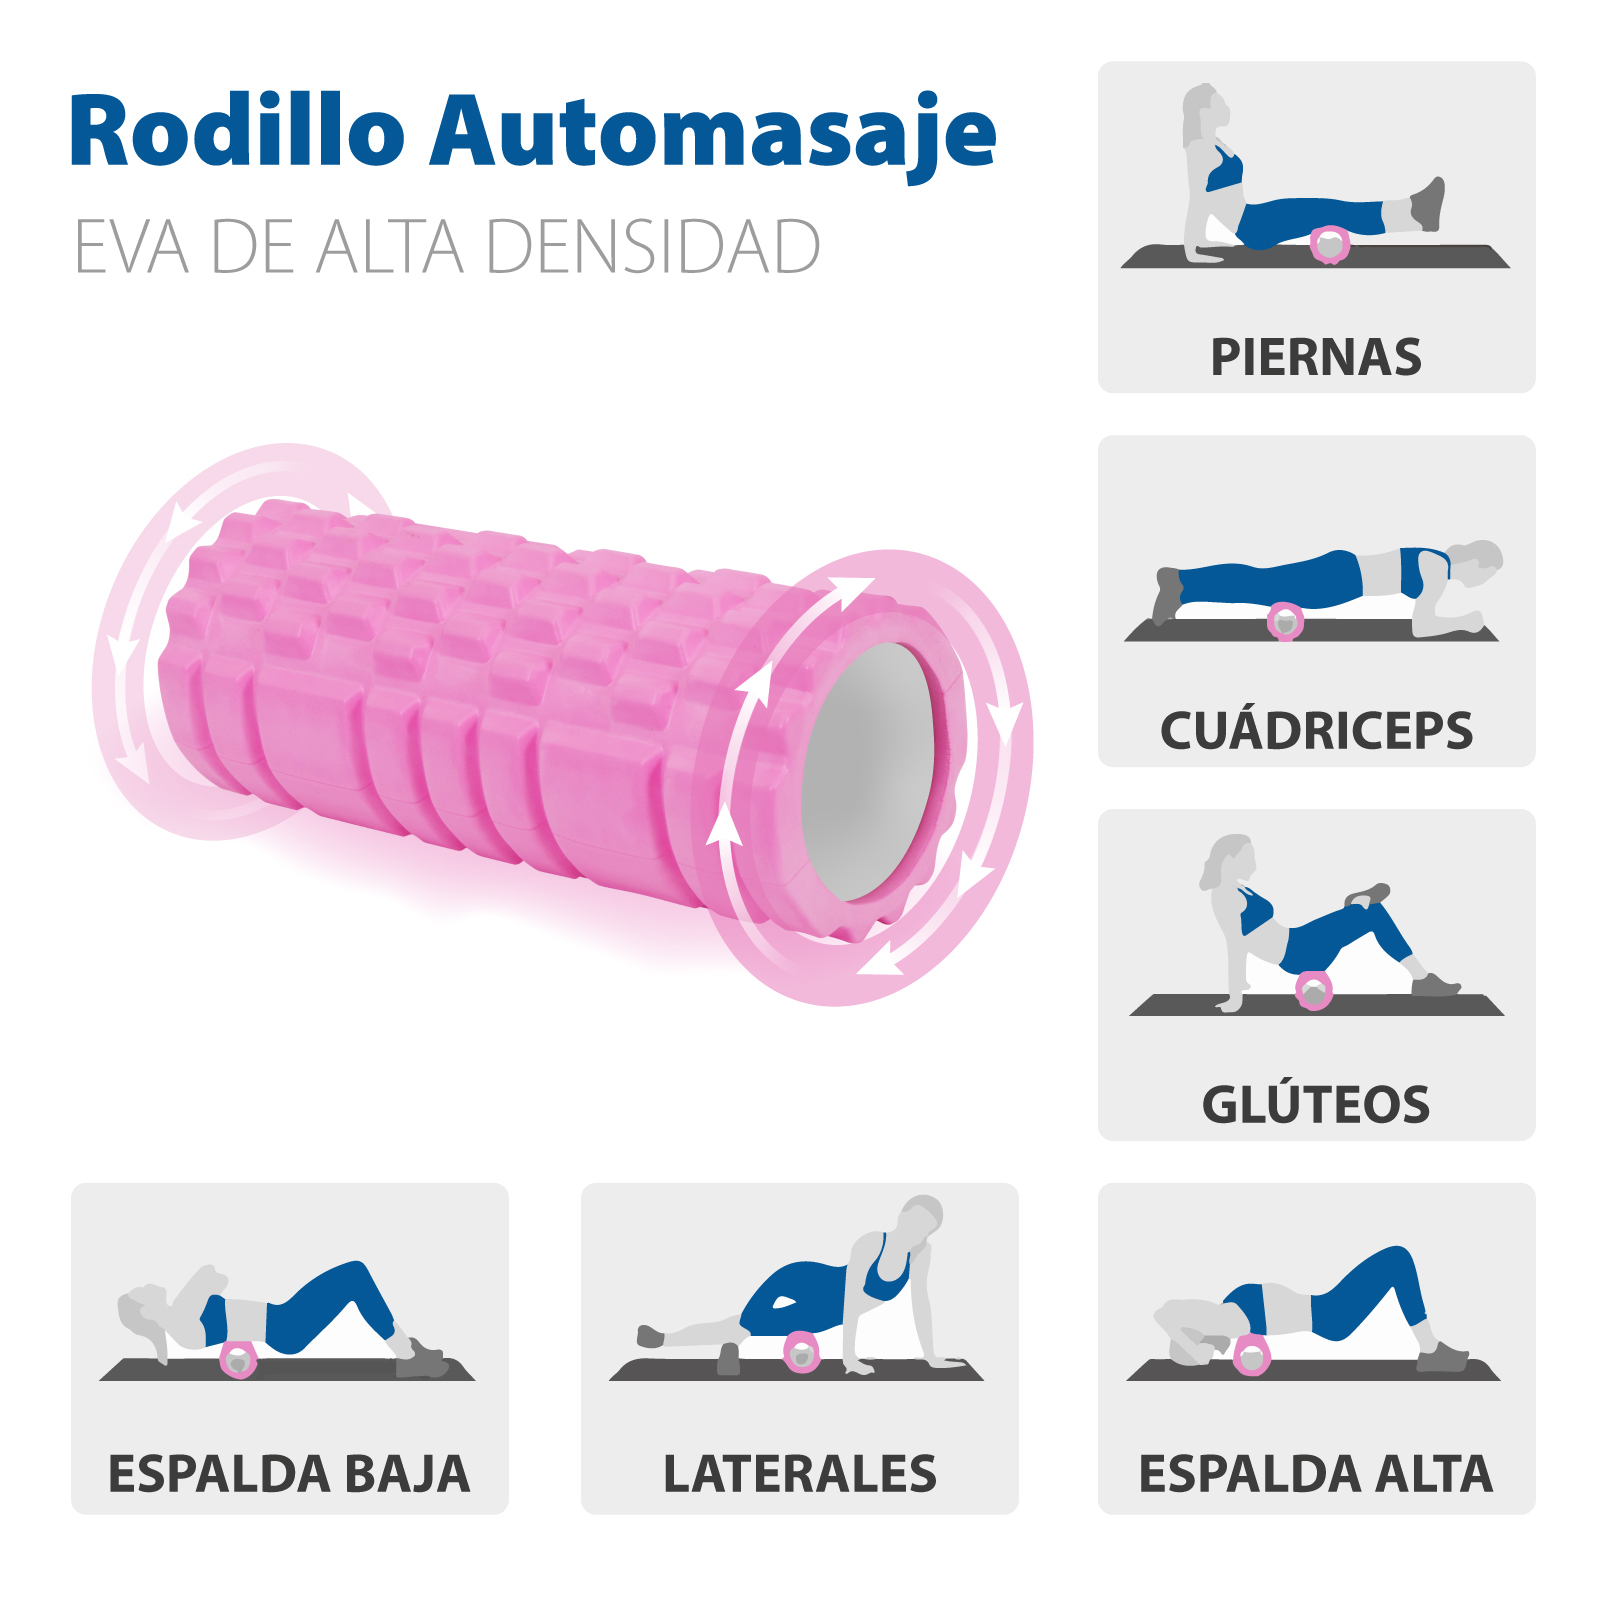 Rodillo de espuma de densidad suave, Optp Pro Roller, para masaje,  estiramiento, ejercicios, yoga y pilates